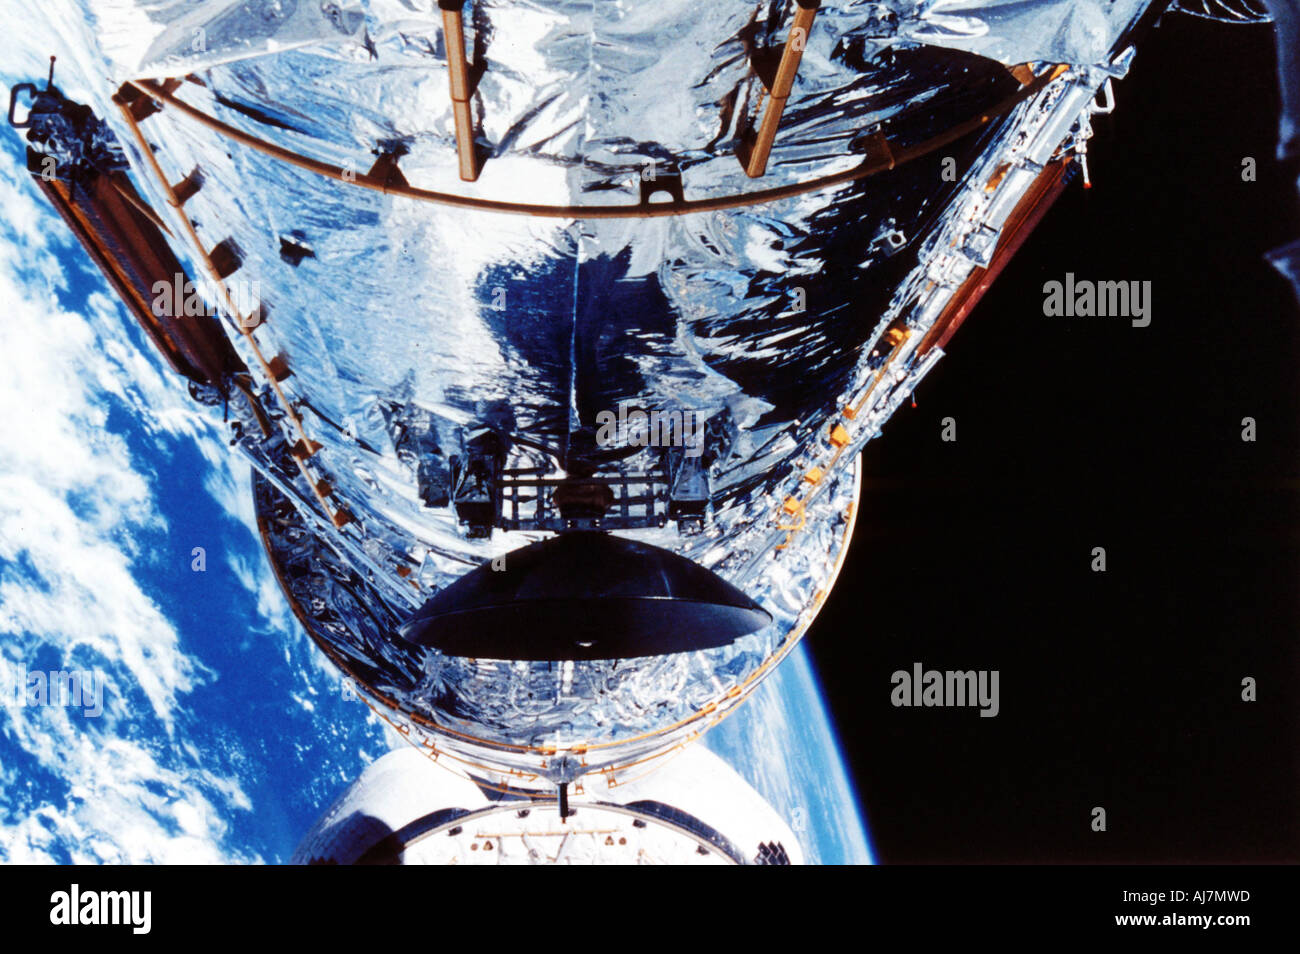 Le télescope spatial Hubble en orbite autour de la Terre, c1990s. Artiste : Inconnu Banque D'Images